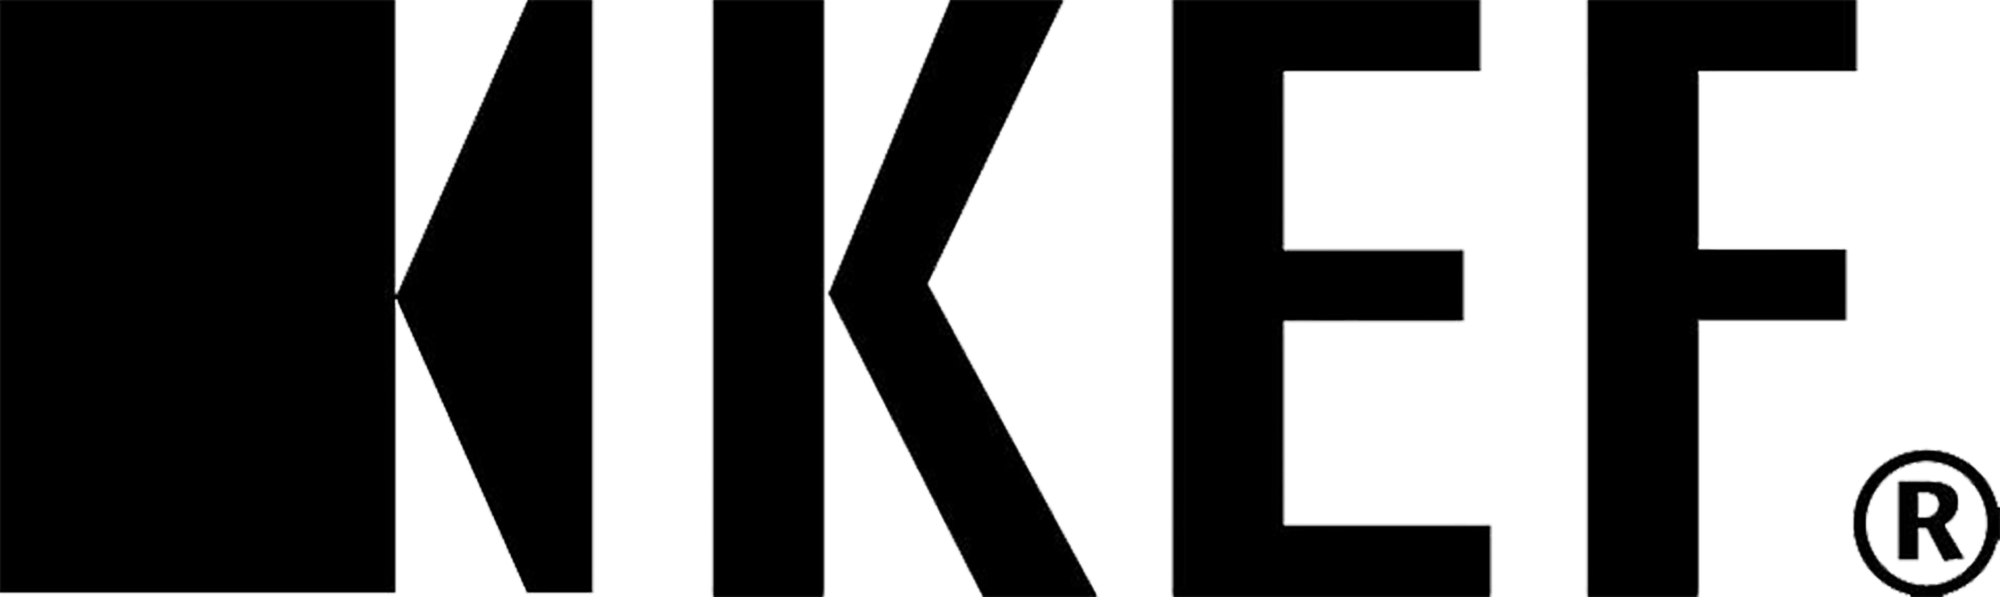 Bildergebnis für kef logo